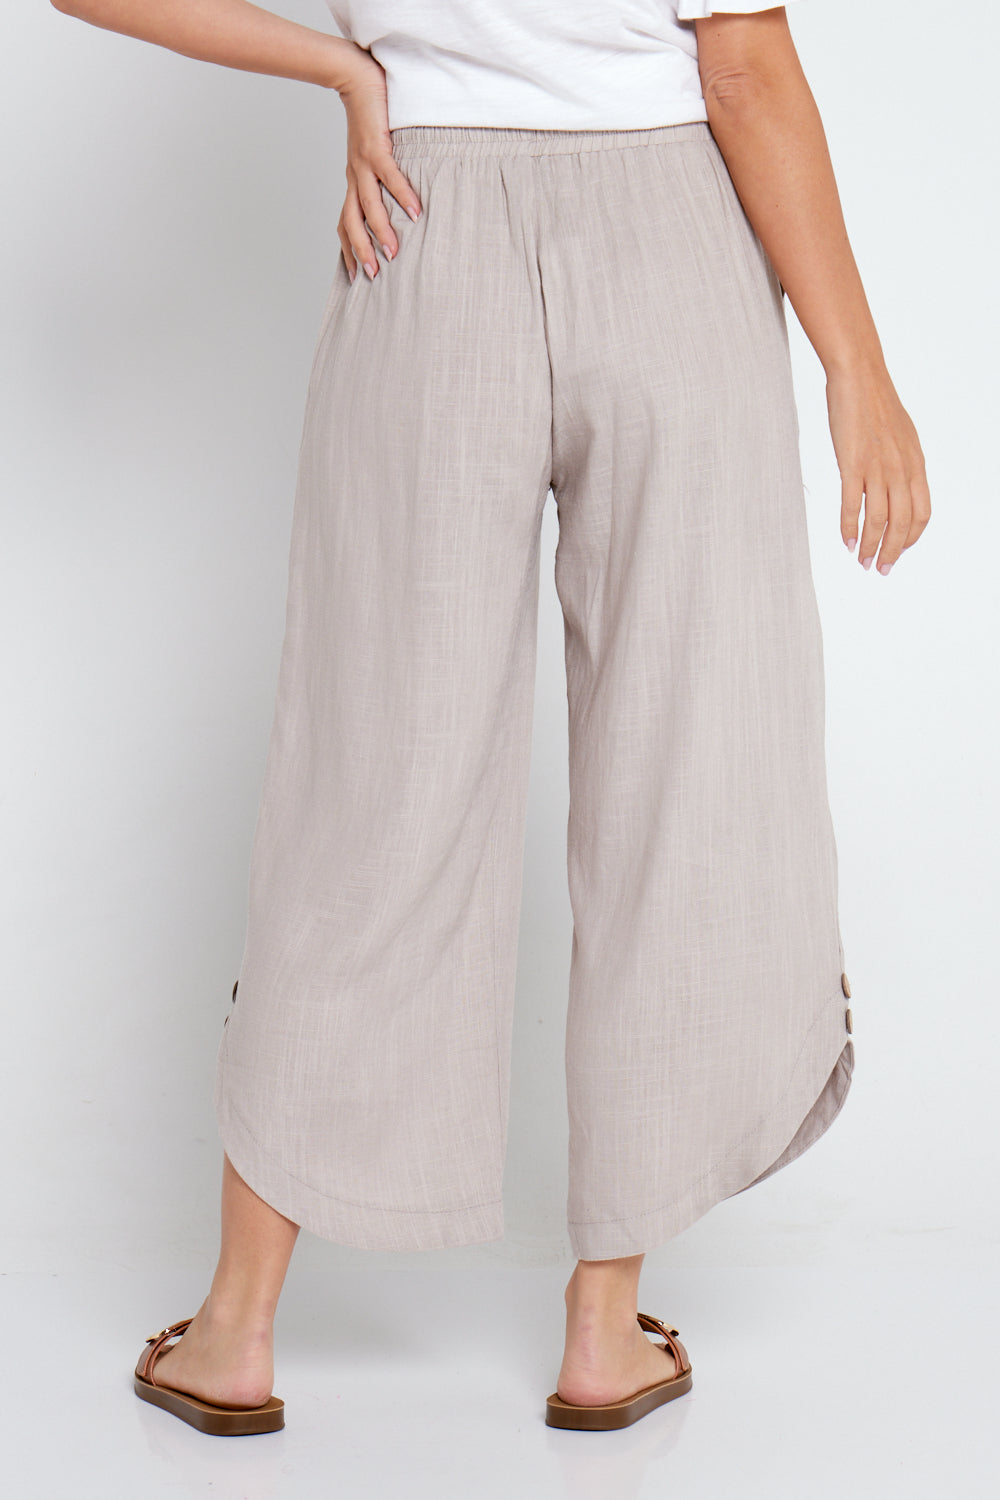 Cartia Linen Pants - Beige